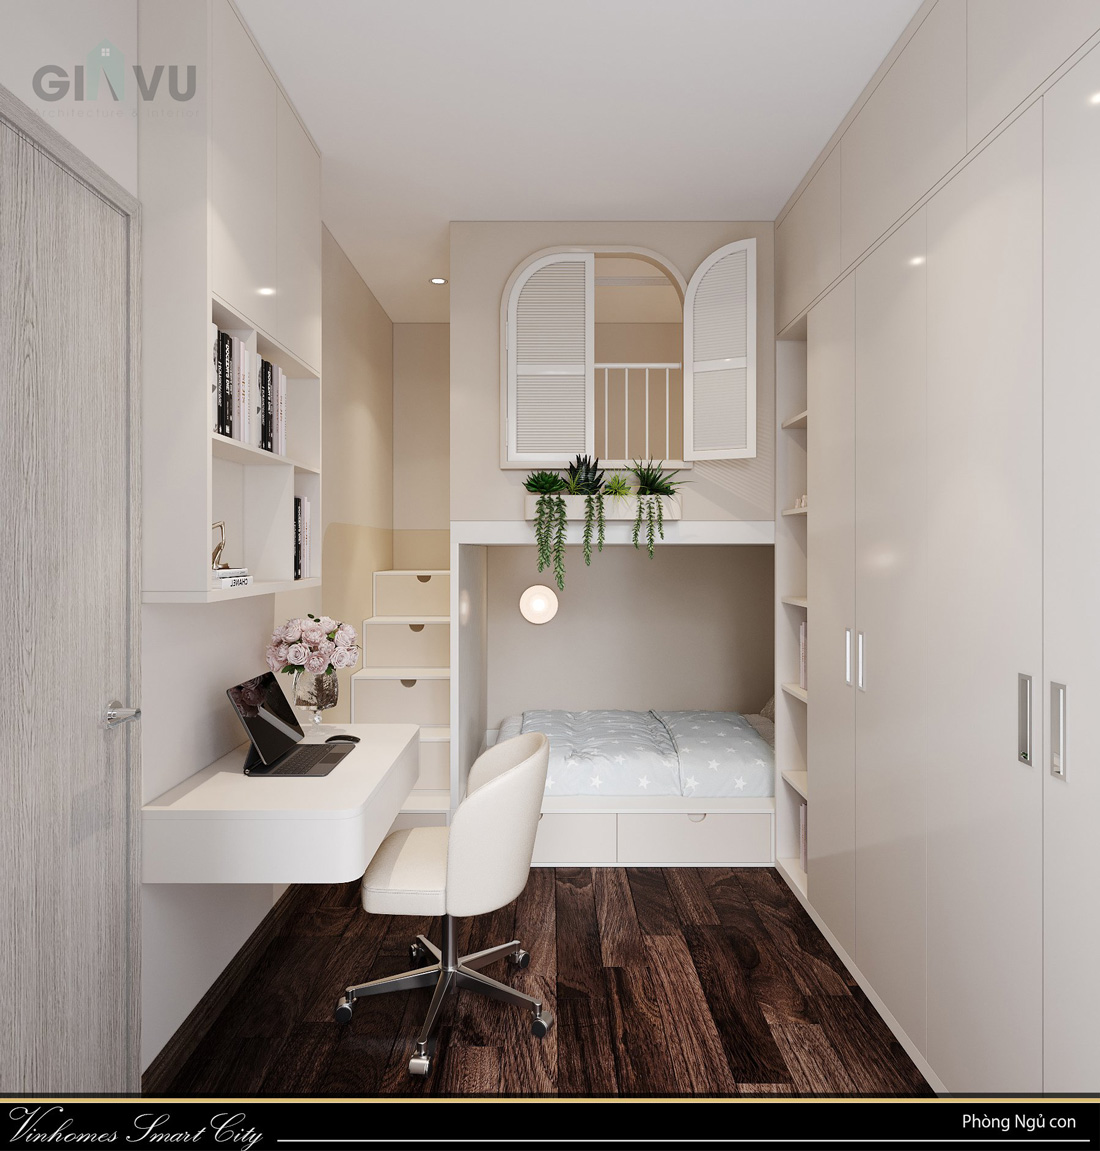 thiết kế nội thất căn hộ Masteri smart City căn hộ 65m2 10